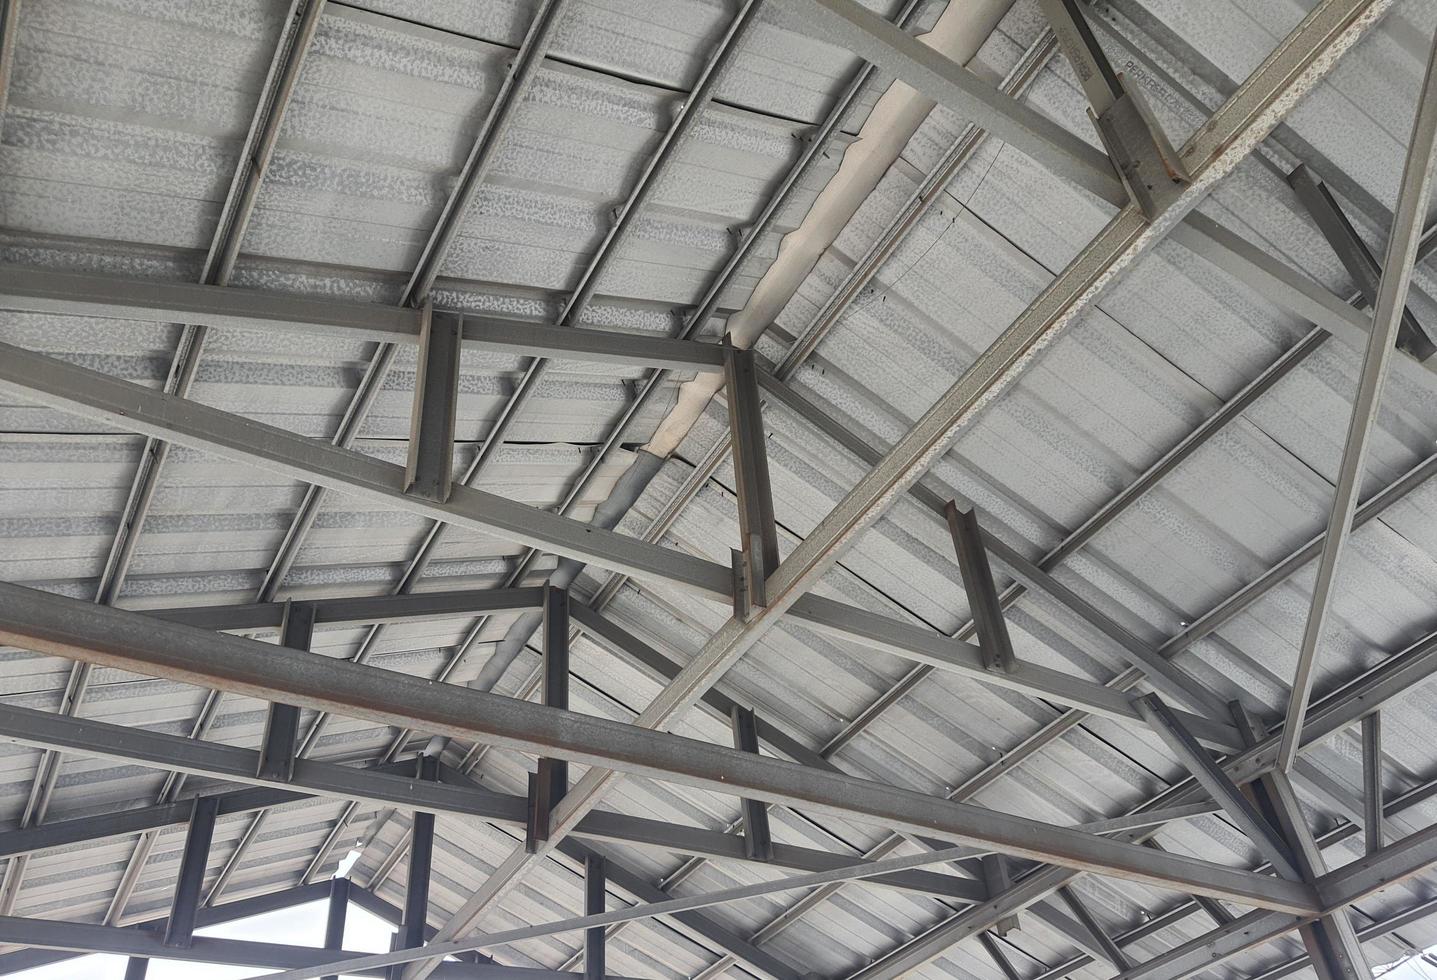 estructura de acero para un techo simple. foto